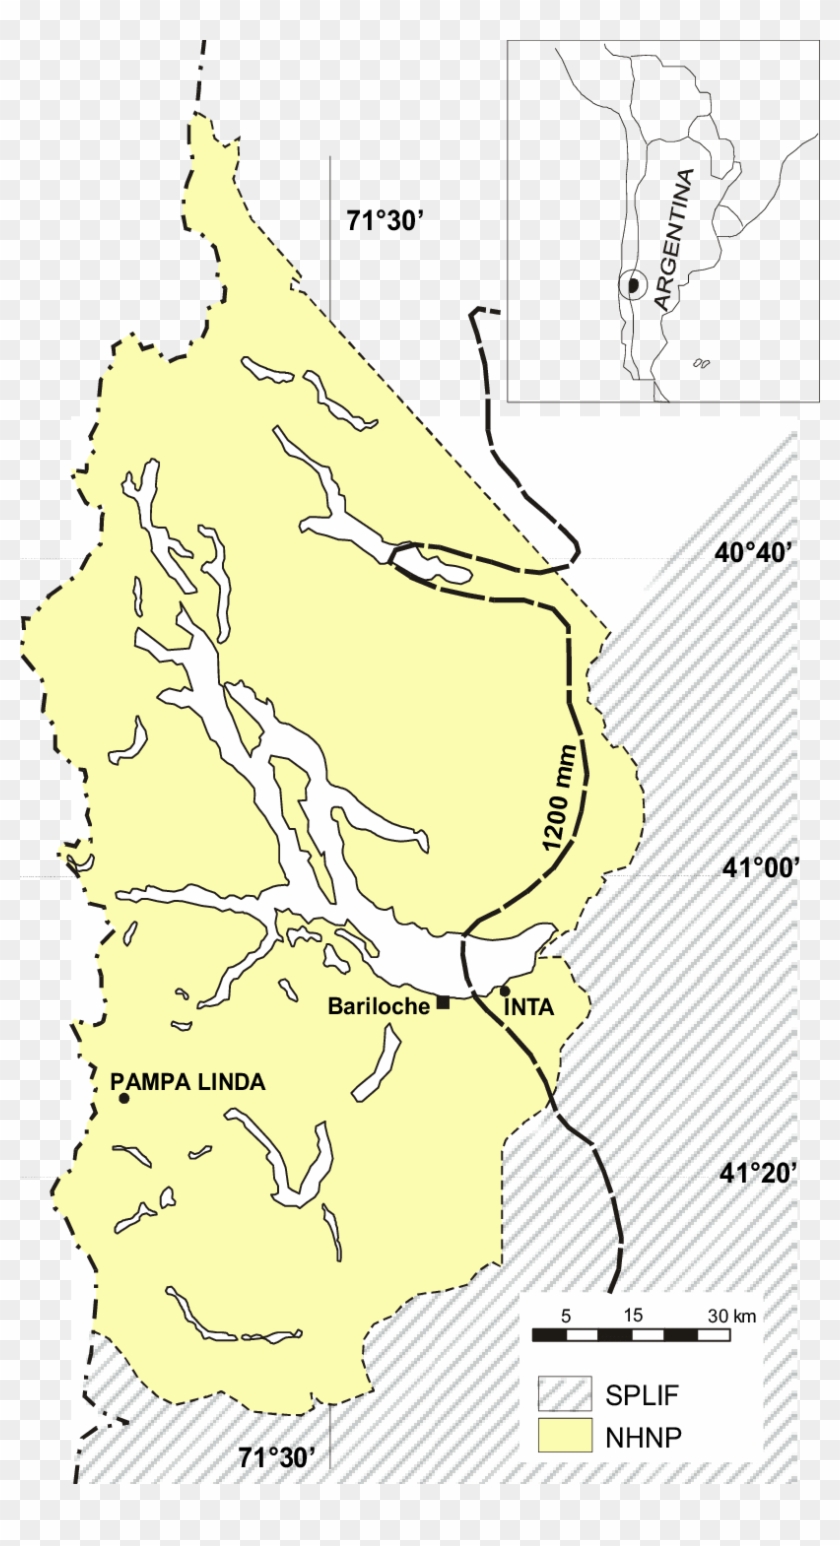 Area Controled By The Servicio De Prevención Y Lucha - Map Clipart #3317377